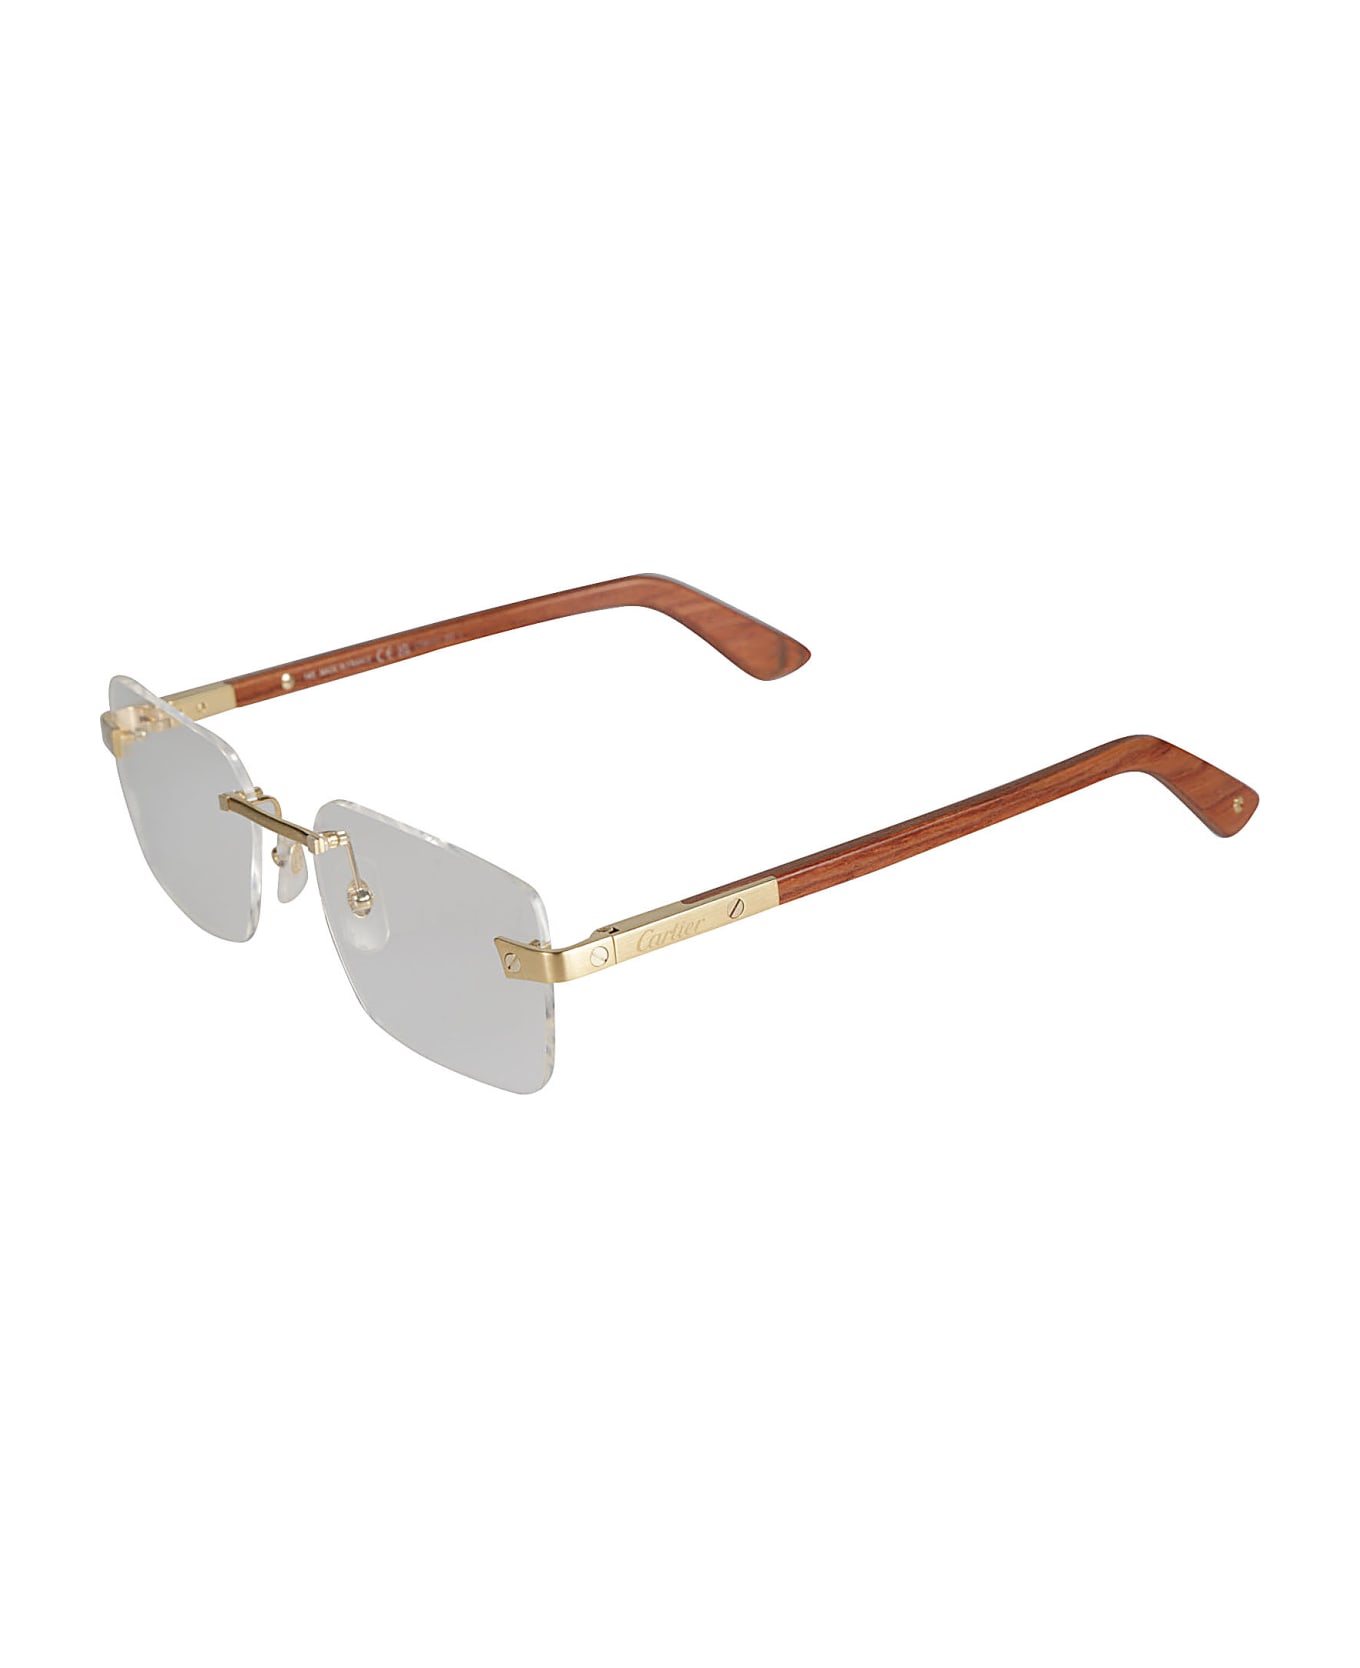 Cartier Eyewear Rimless Rectangular Lense Glasses - Gold/Brown